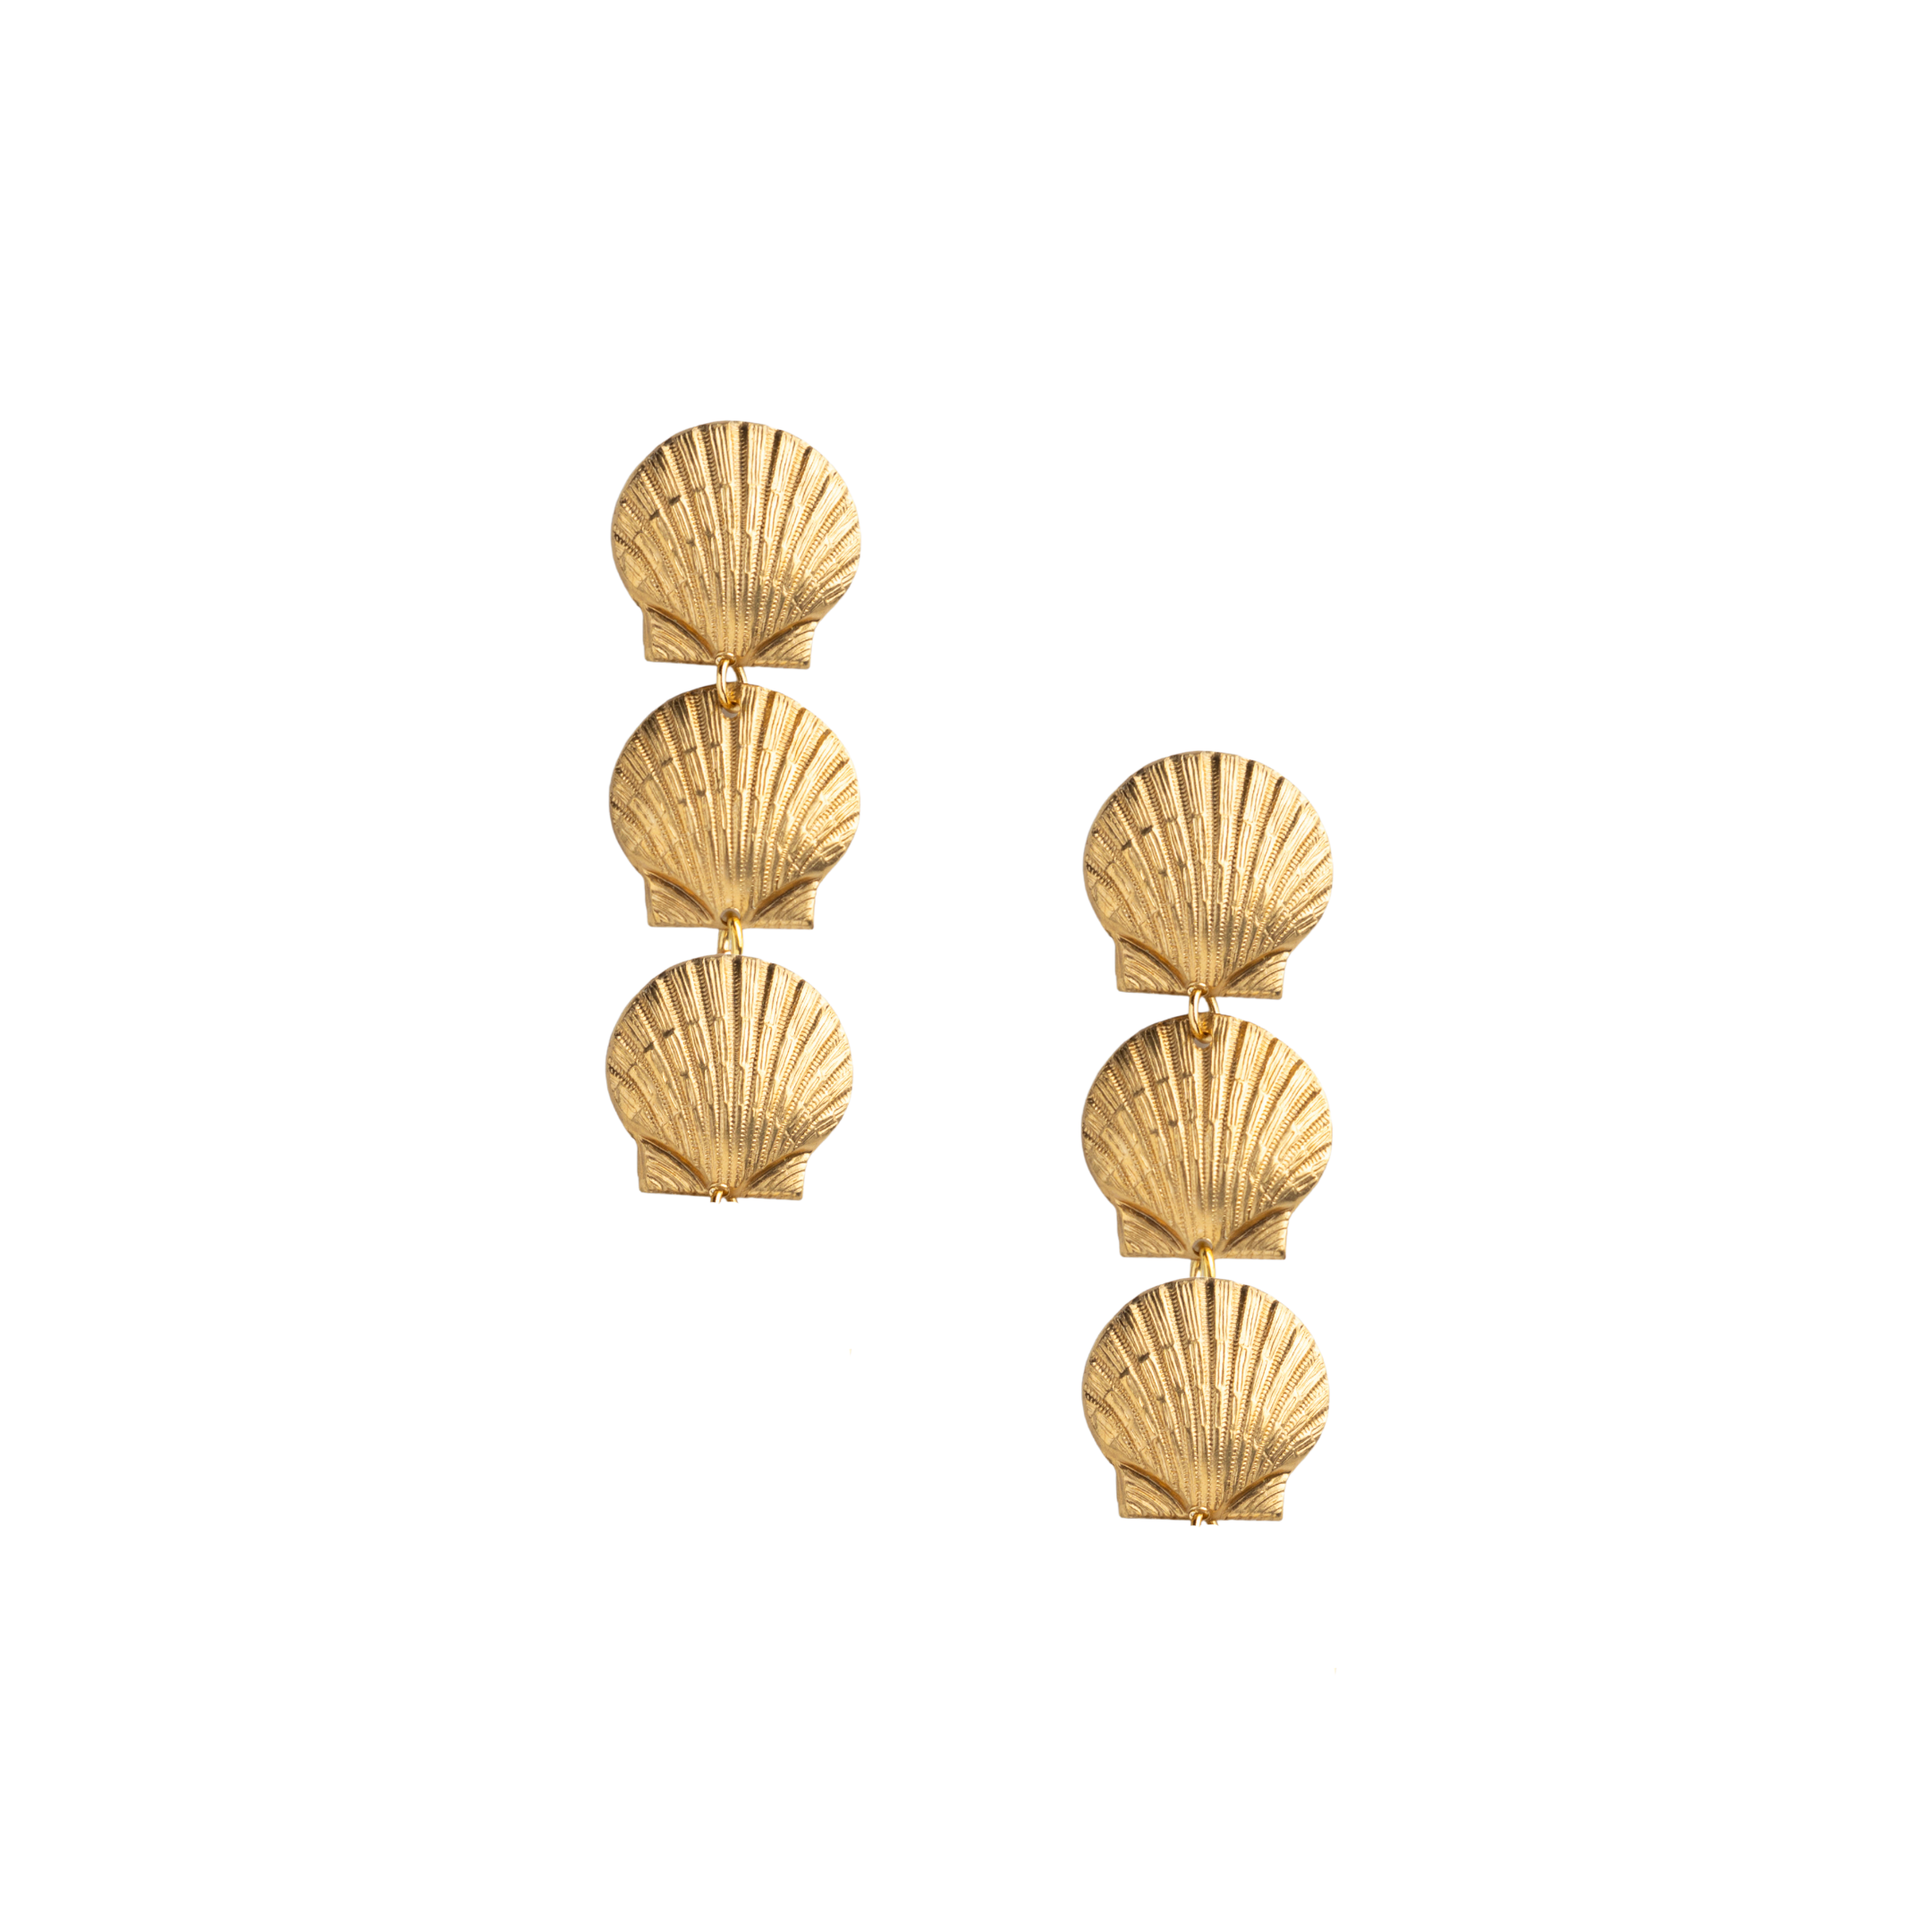 Shell Earrings - Buy Shell Earrings online in India